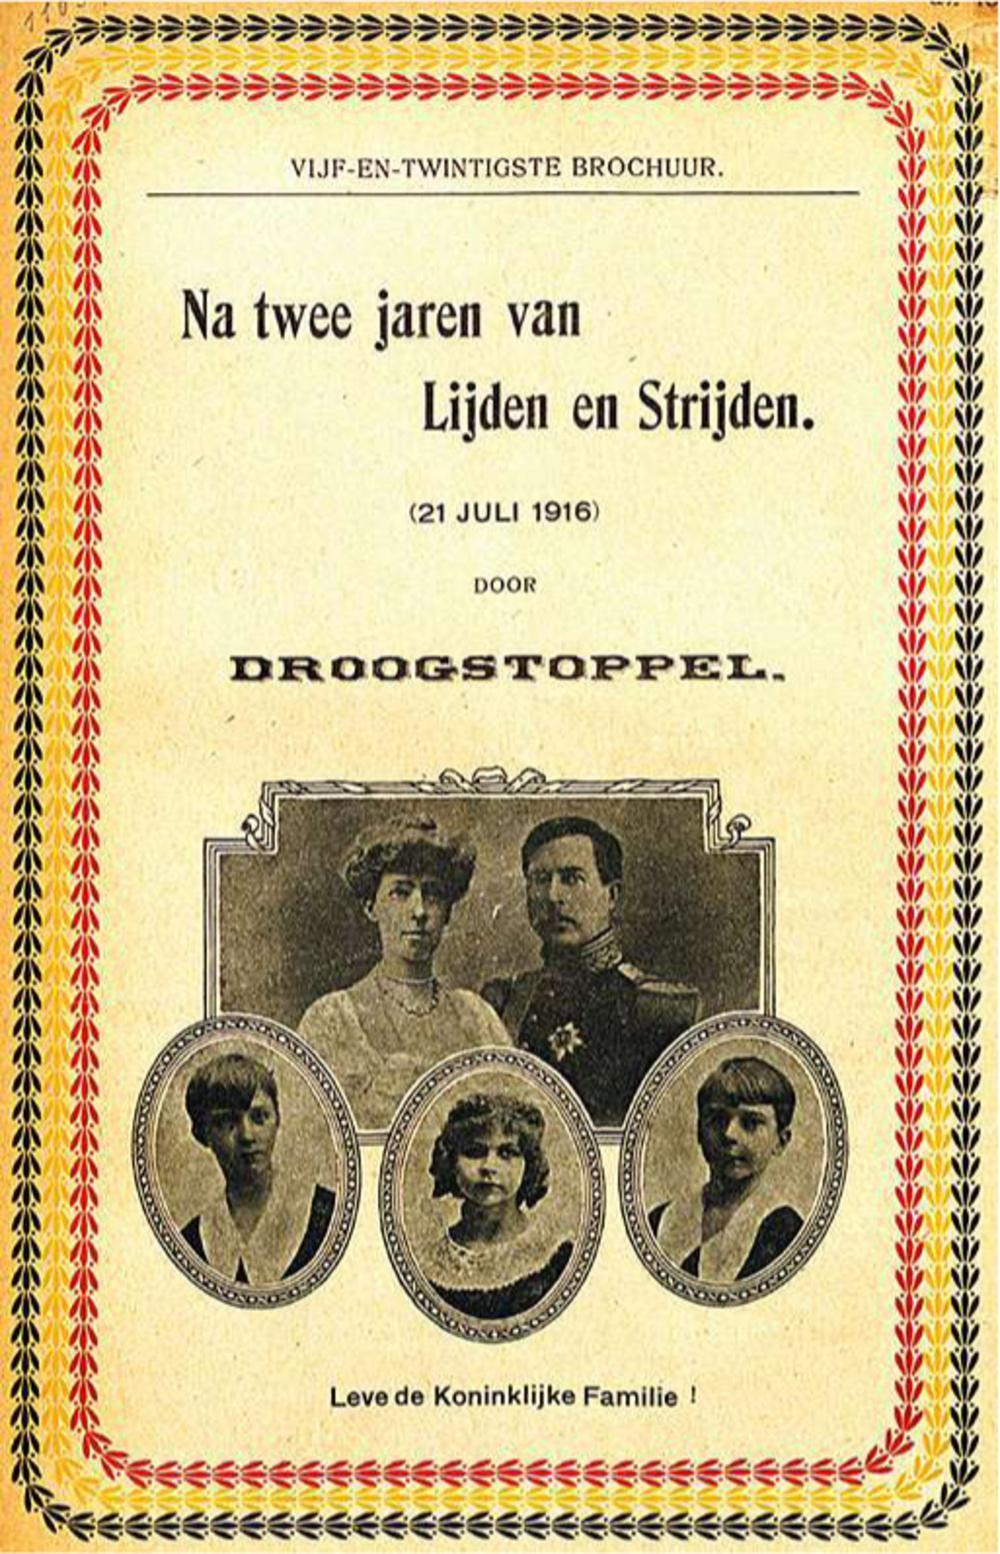 Brochure van Droogstoppel, pseudoniem van de Antwerpse sluikschrijver Jozef Buerbaum, die voor zijn pro-Belgische, anti-Duitse en anti-activistische schrijfsels tot 22 jaar werd veroordeeld en gedeporteerd werd naar Duitsland.